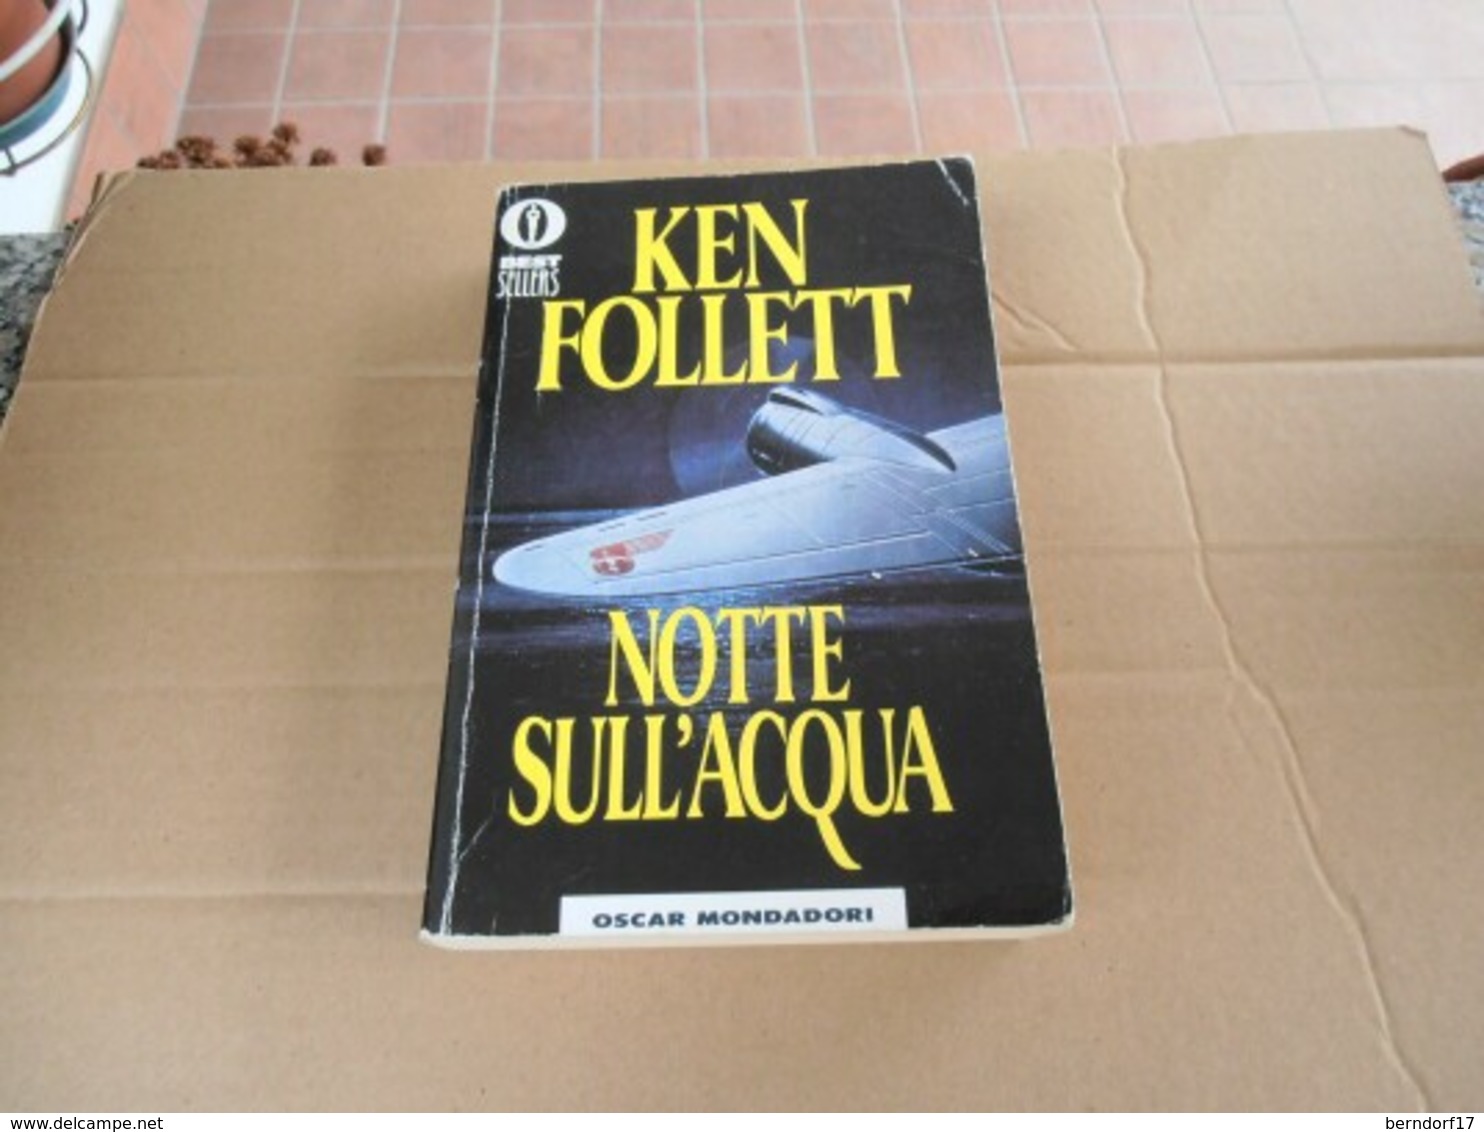 Ken Follet - Notte Sull'acqua - Famous Authors